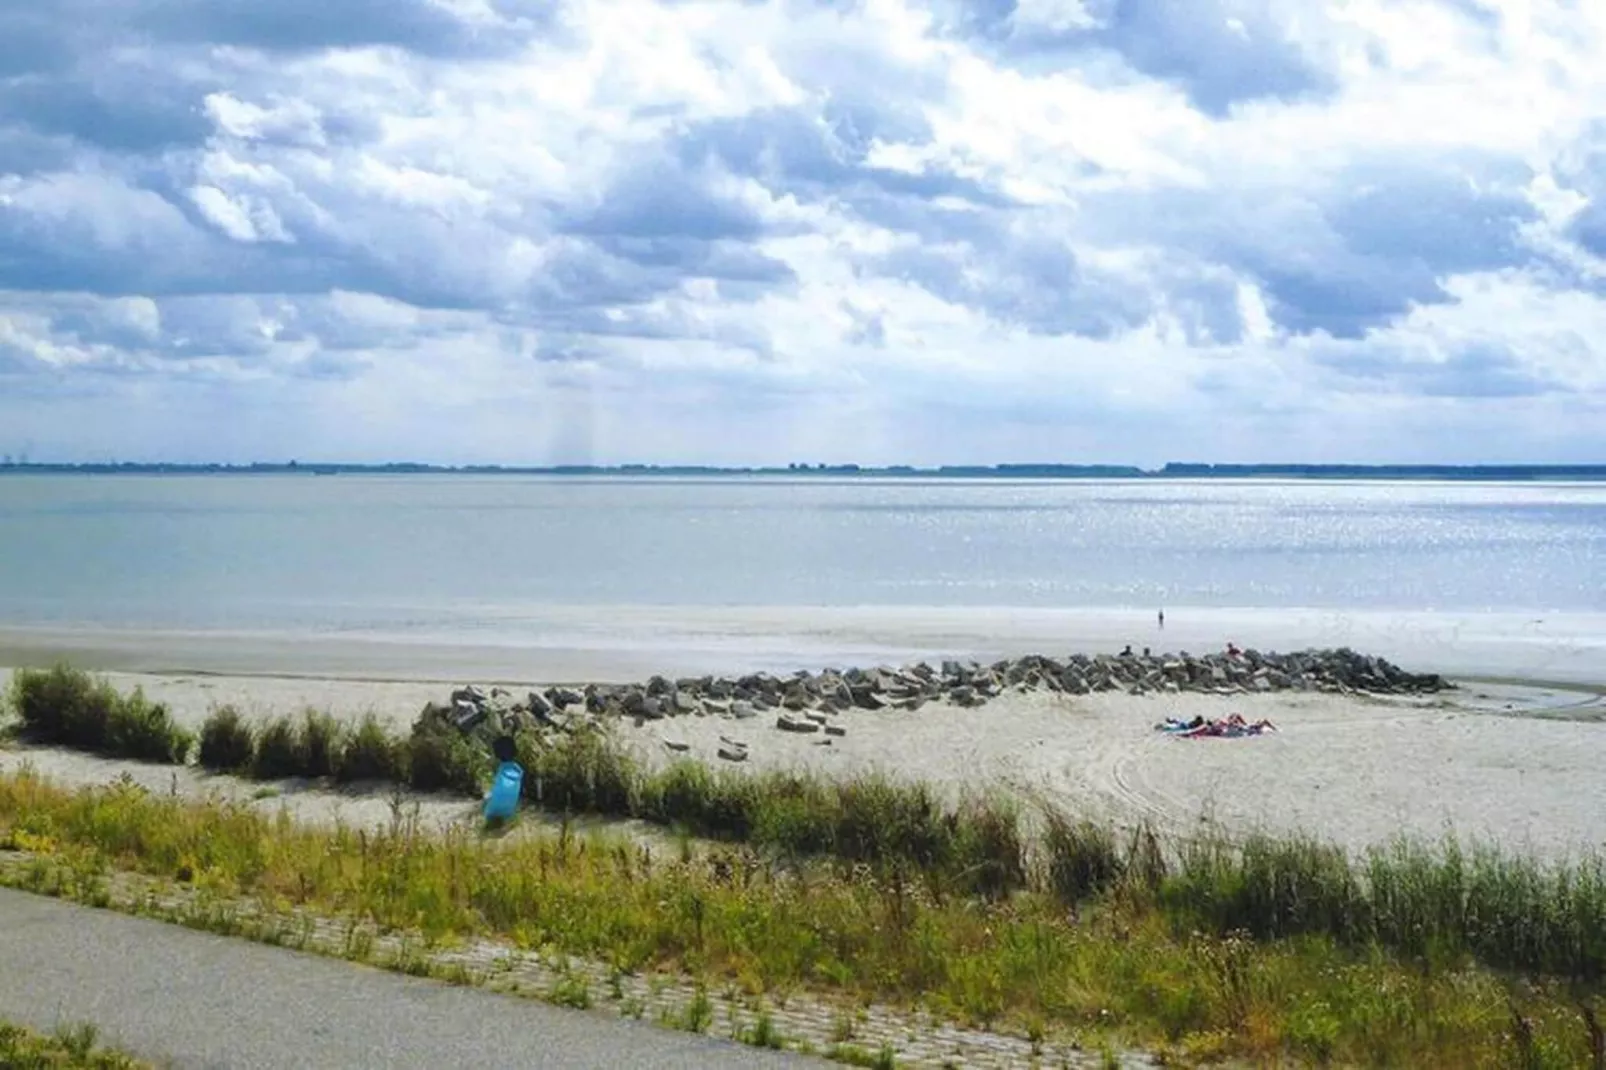 Strandwoning Baarland in Zeeland-Gebieden zomer 1km